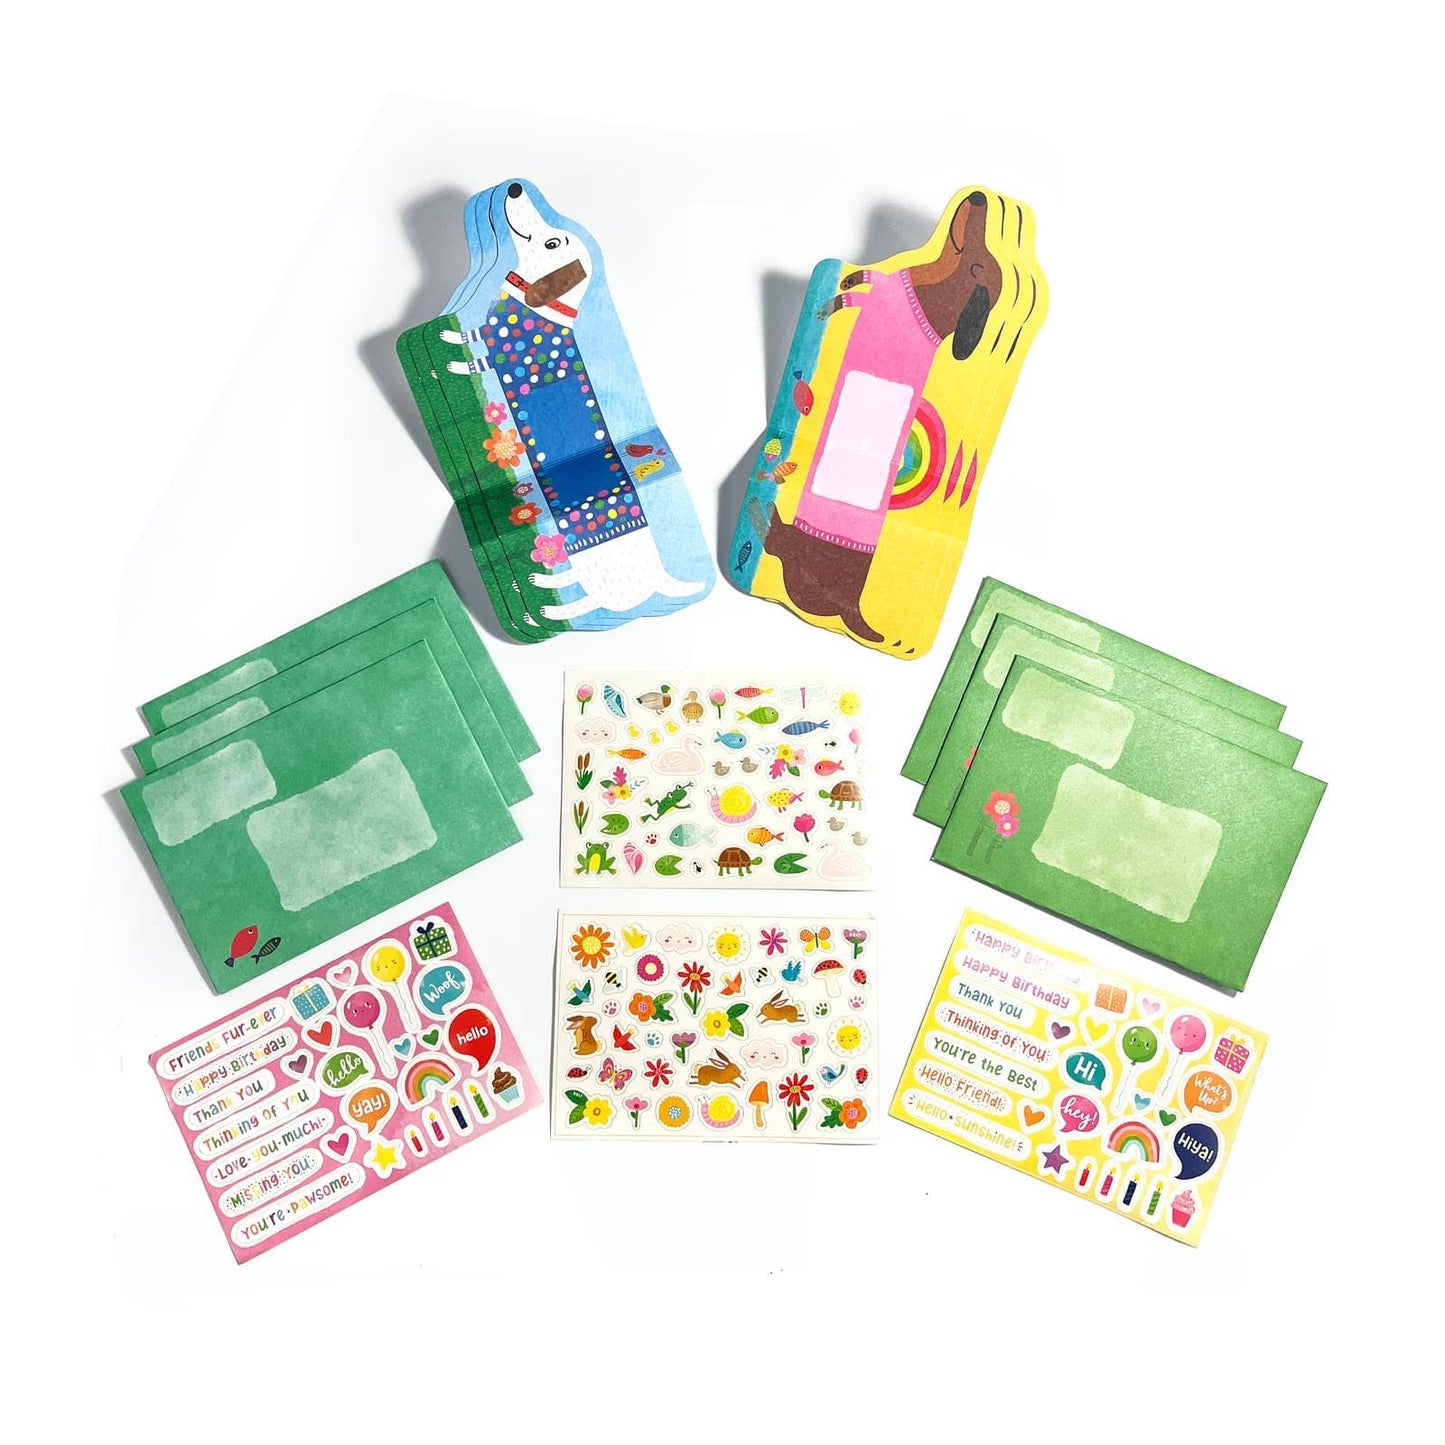 Tiny Tada! Note Cards & Sticker Set: Playful Pups